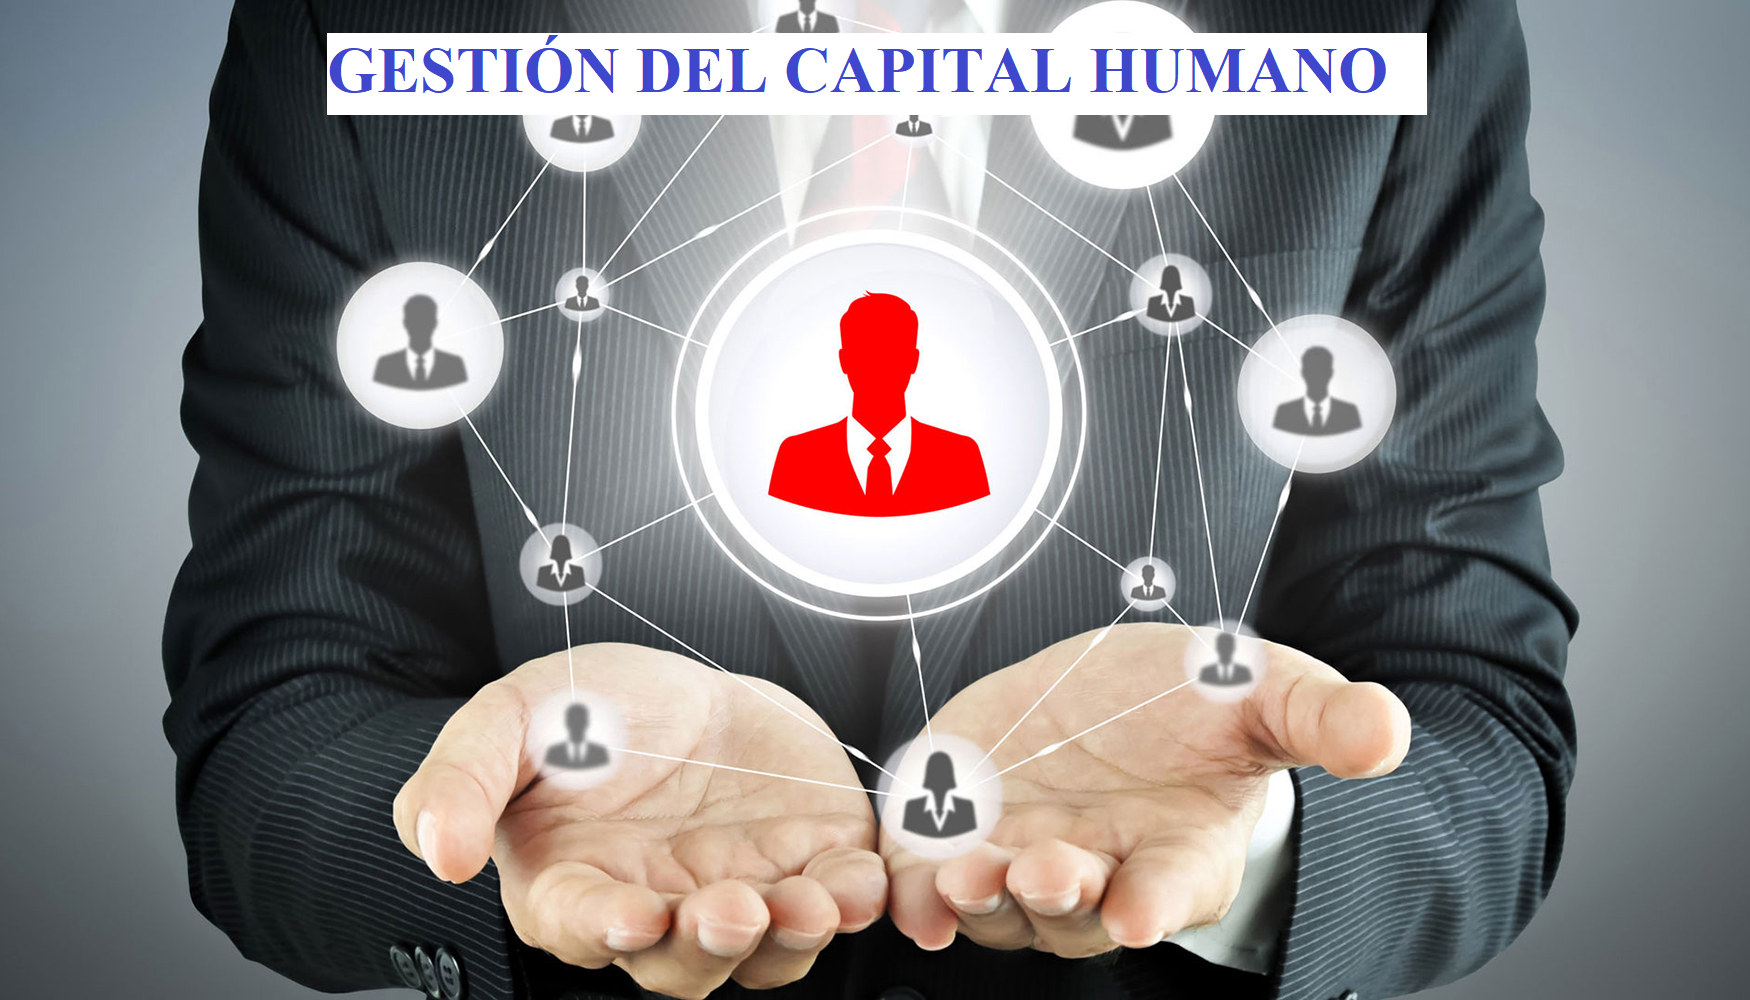  Gestión del Capital Humano AEG-1075